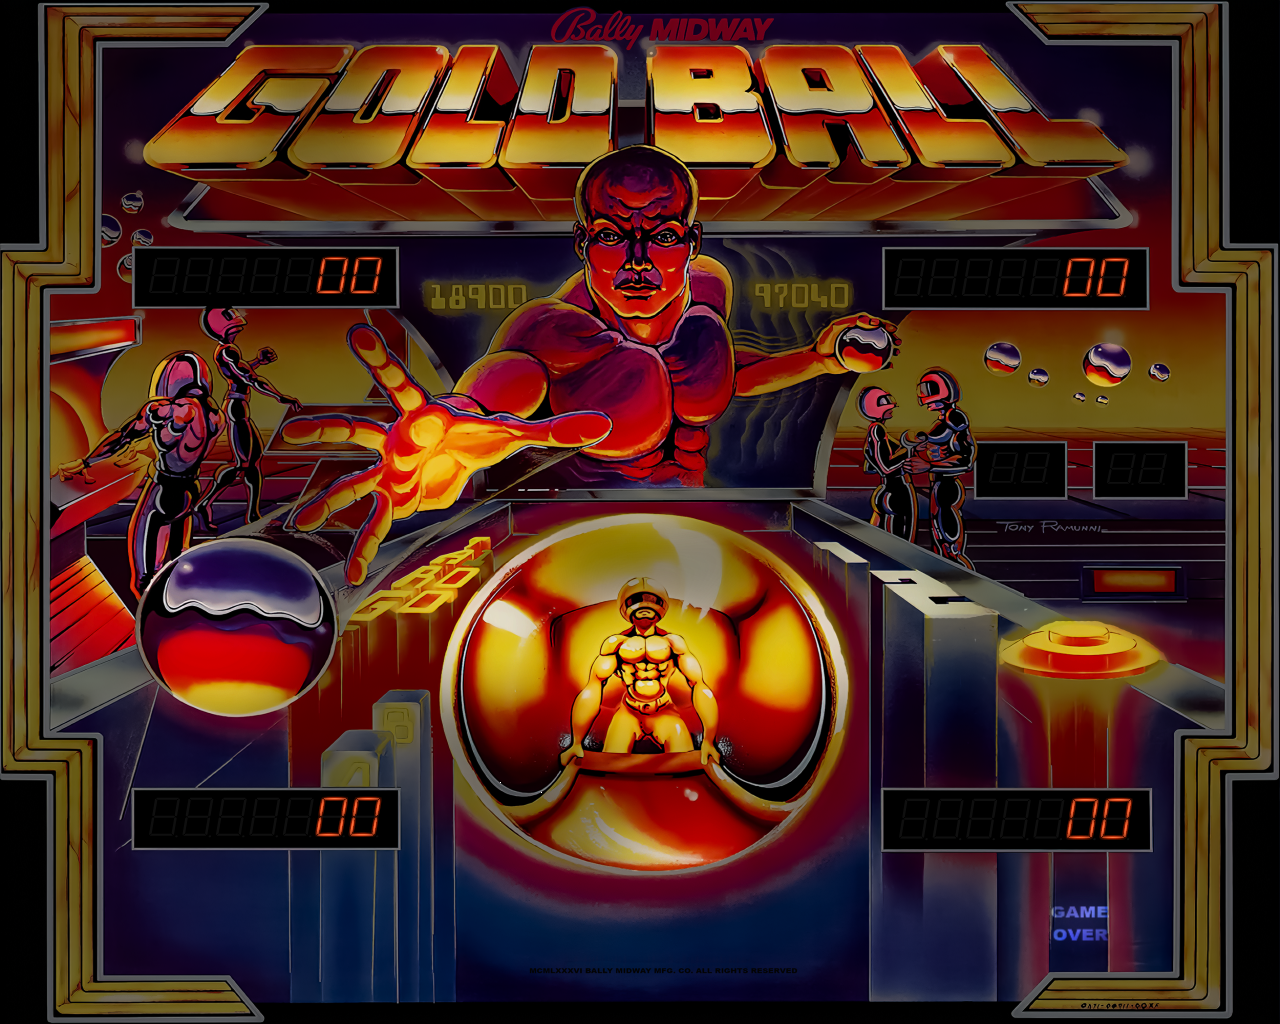 Gold Ball (Bally 1983)